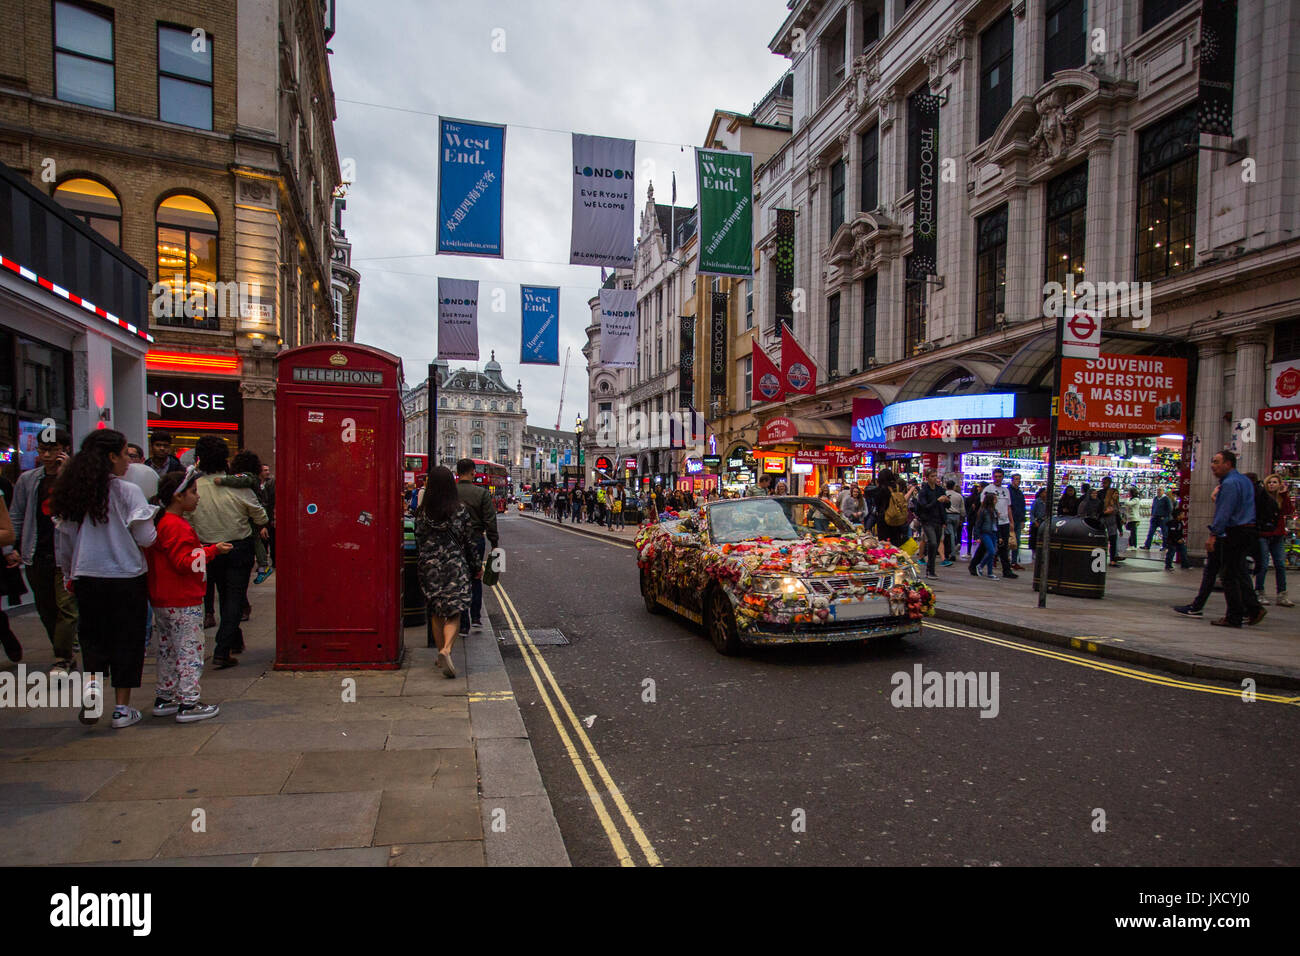 Una vettura che è decorato in un vivace tema Indiano la guida verso il basso Coventry Street e Piccadilly Circus in background in Londra UK. Foto Stock